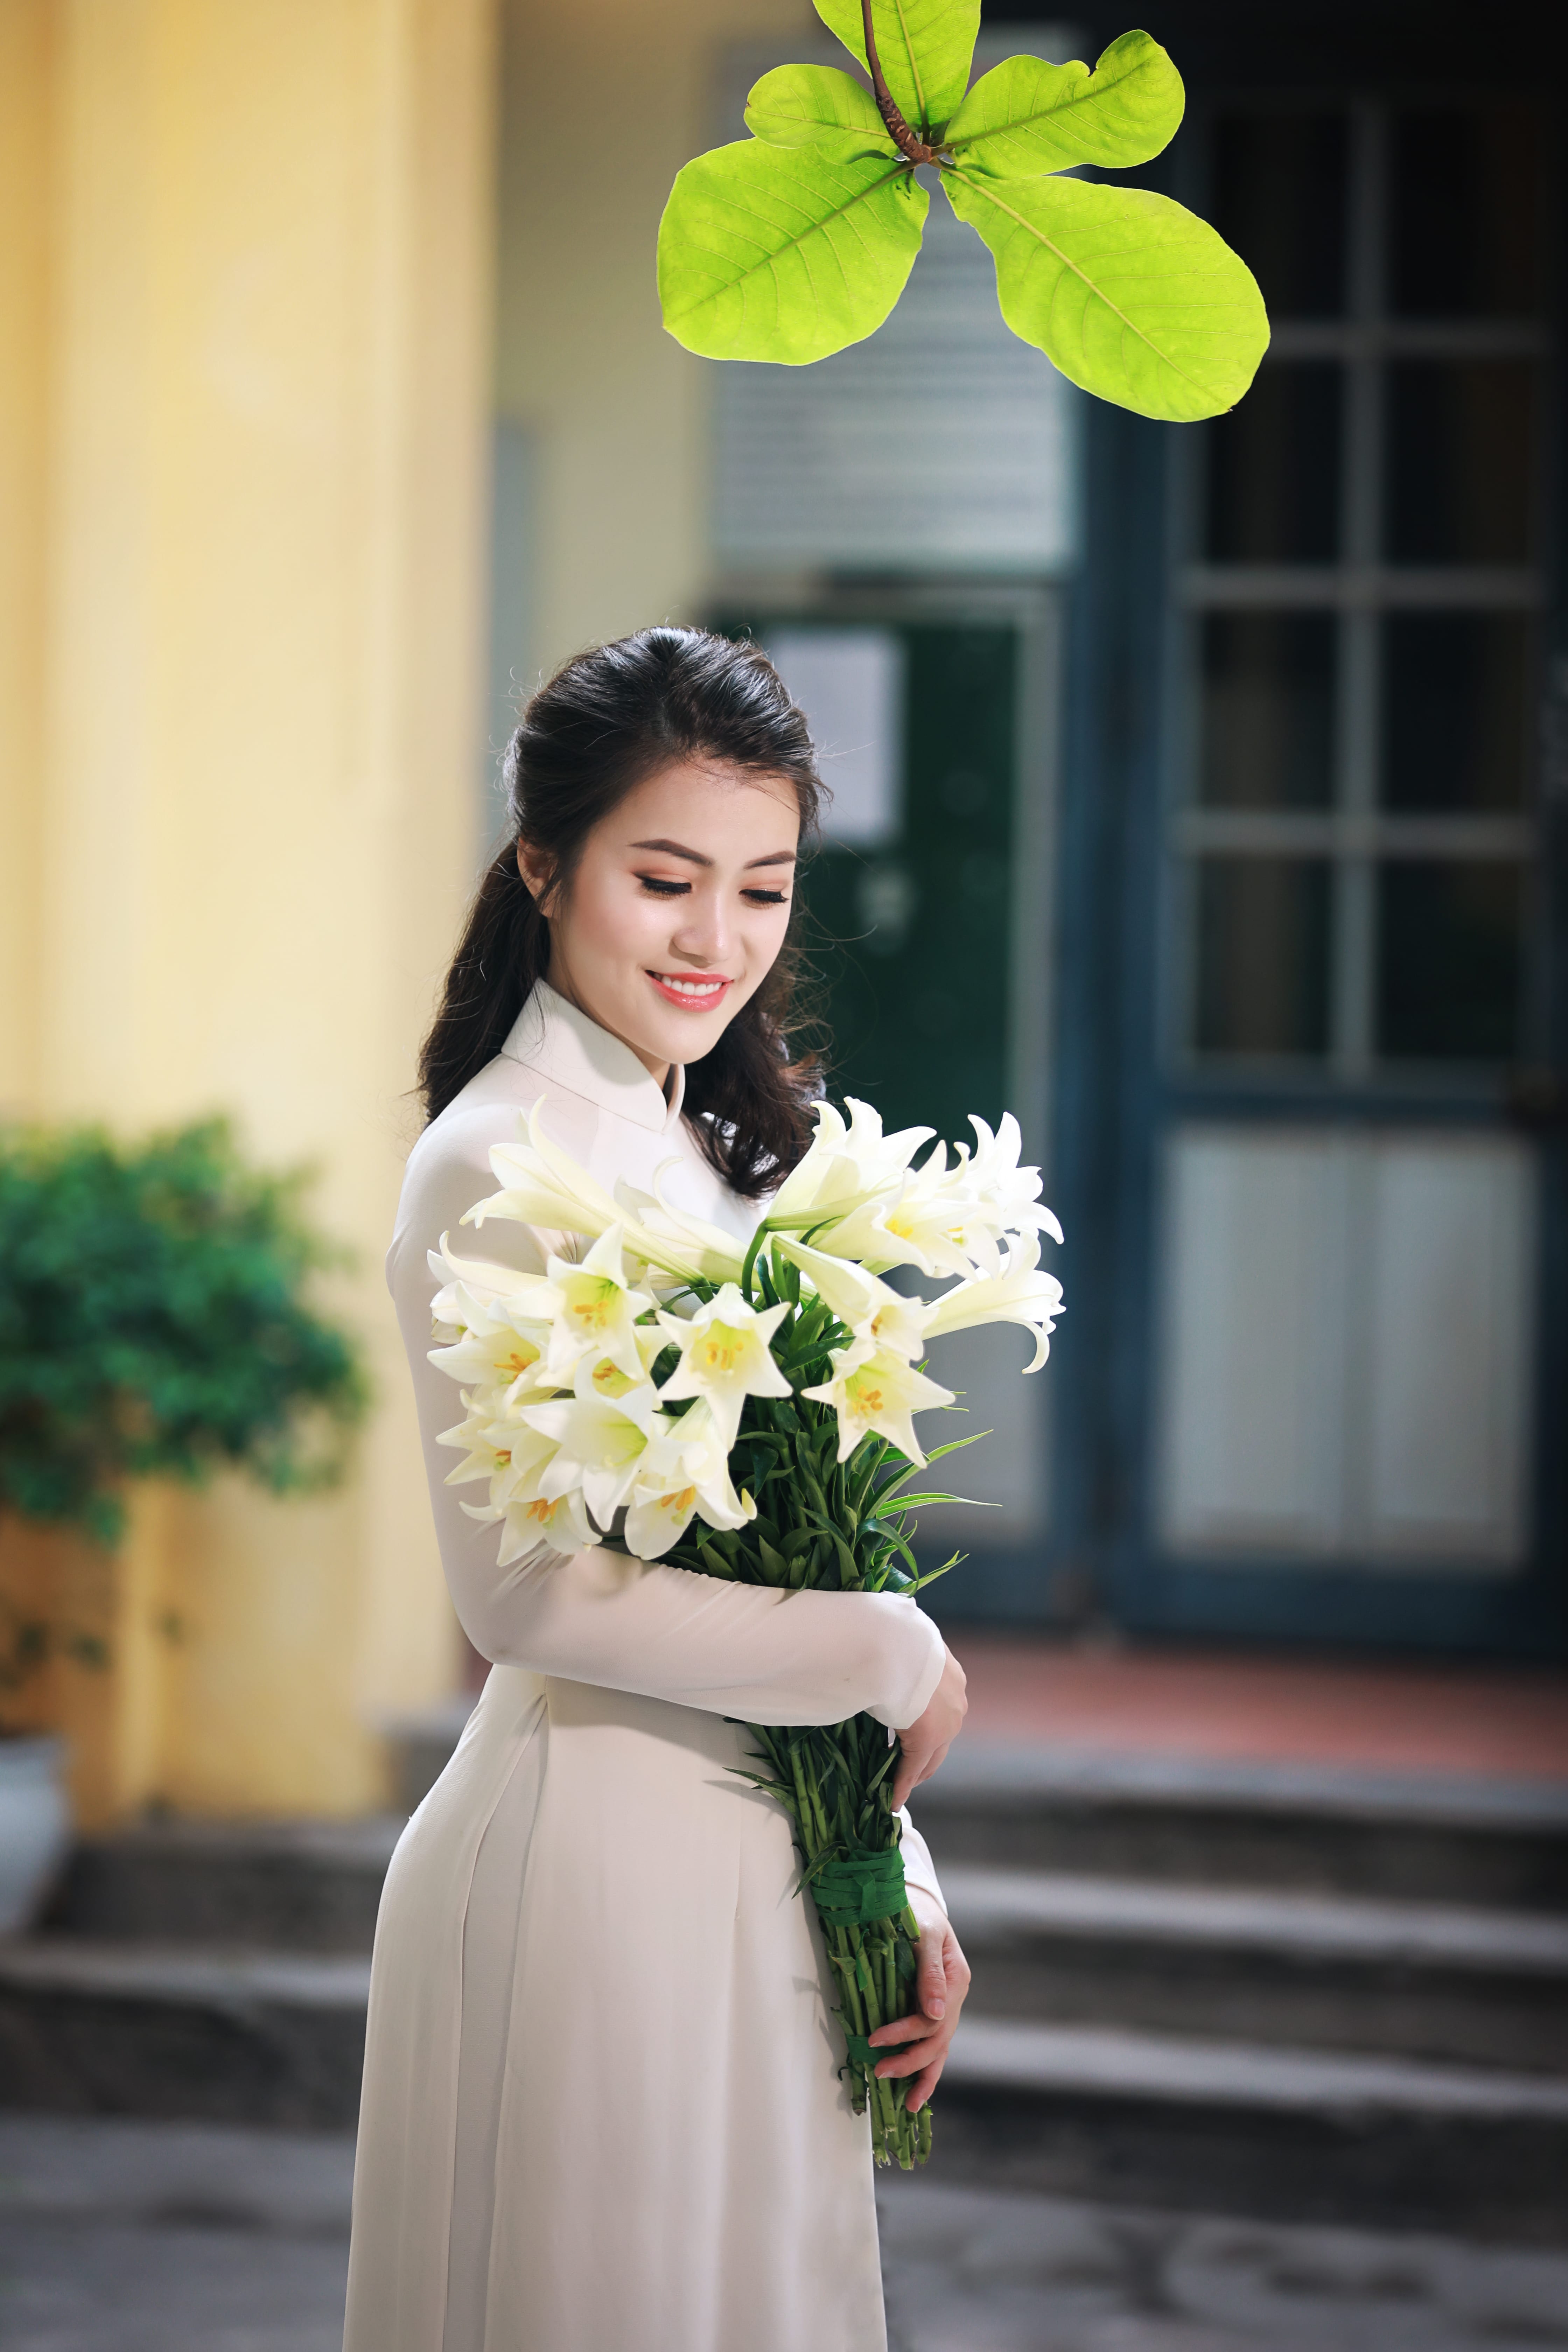 Vẻ đẹp cổ điển của loài hoa tháng tư tôn lên nét thanh lịch cho người phụ nữ Việt. Bà mẹ một con tâm sự: 